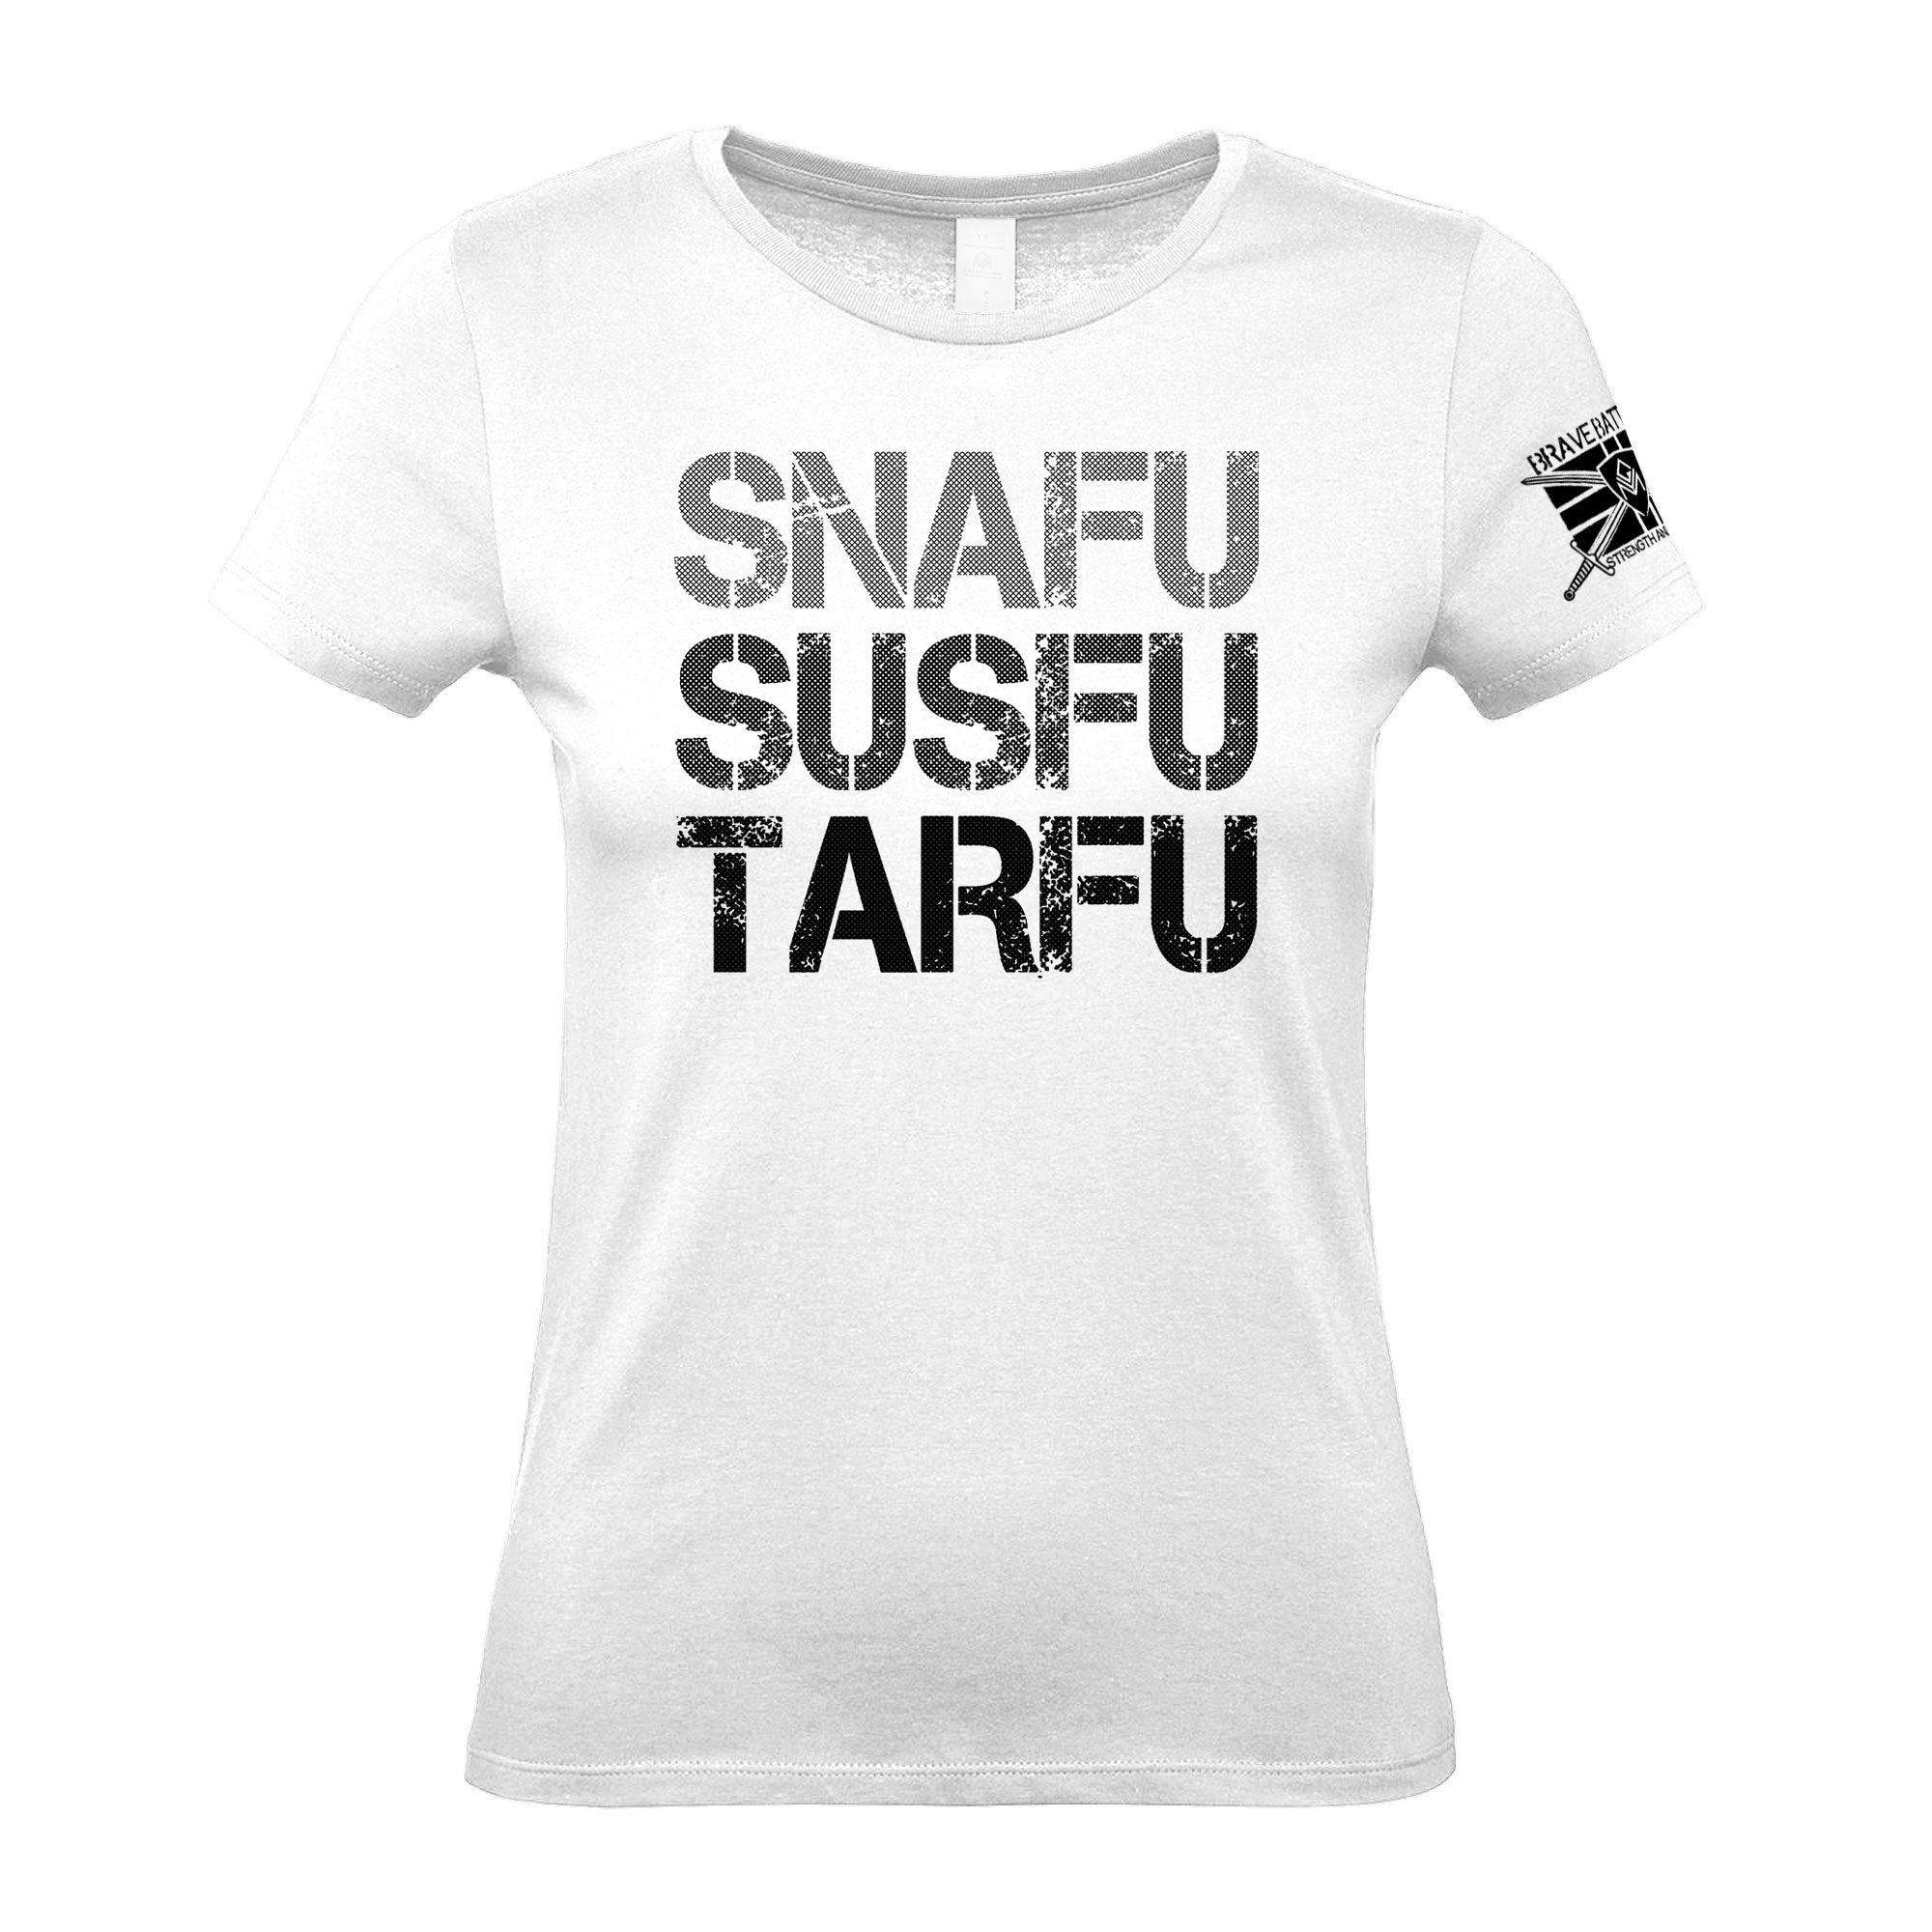 Tarfu - Women's Gym T-Shirt